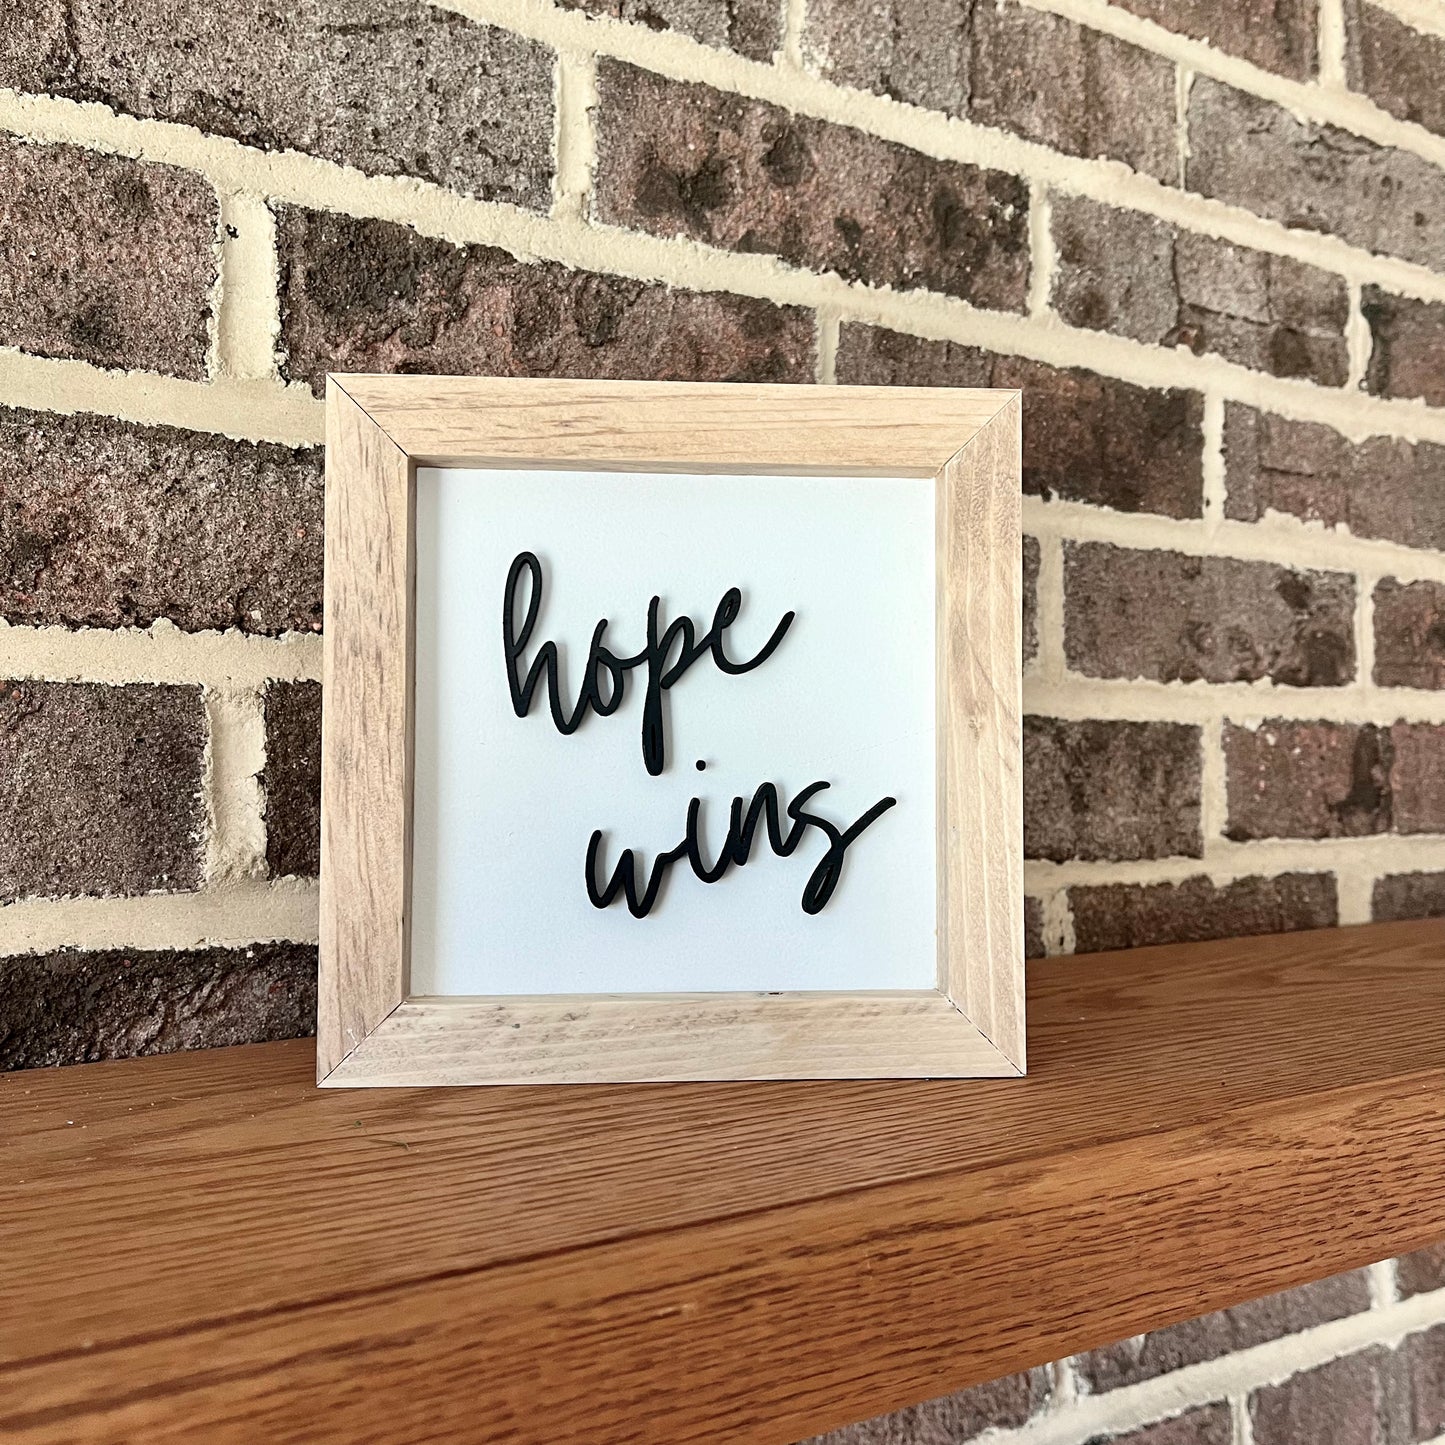 hope wins 3D mini wood sign